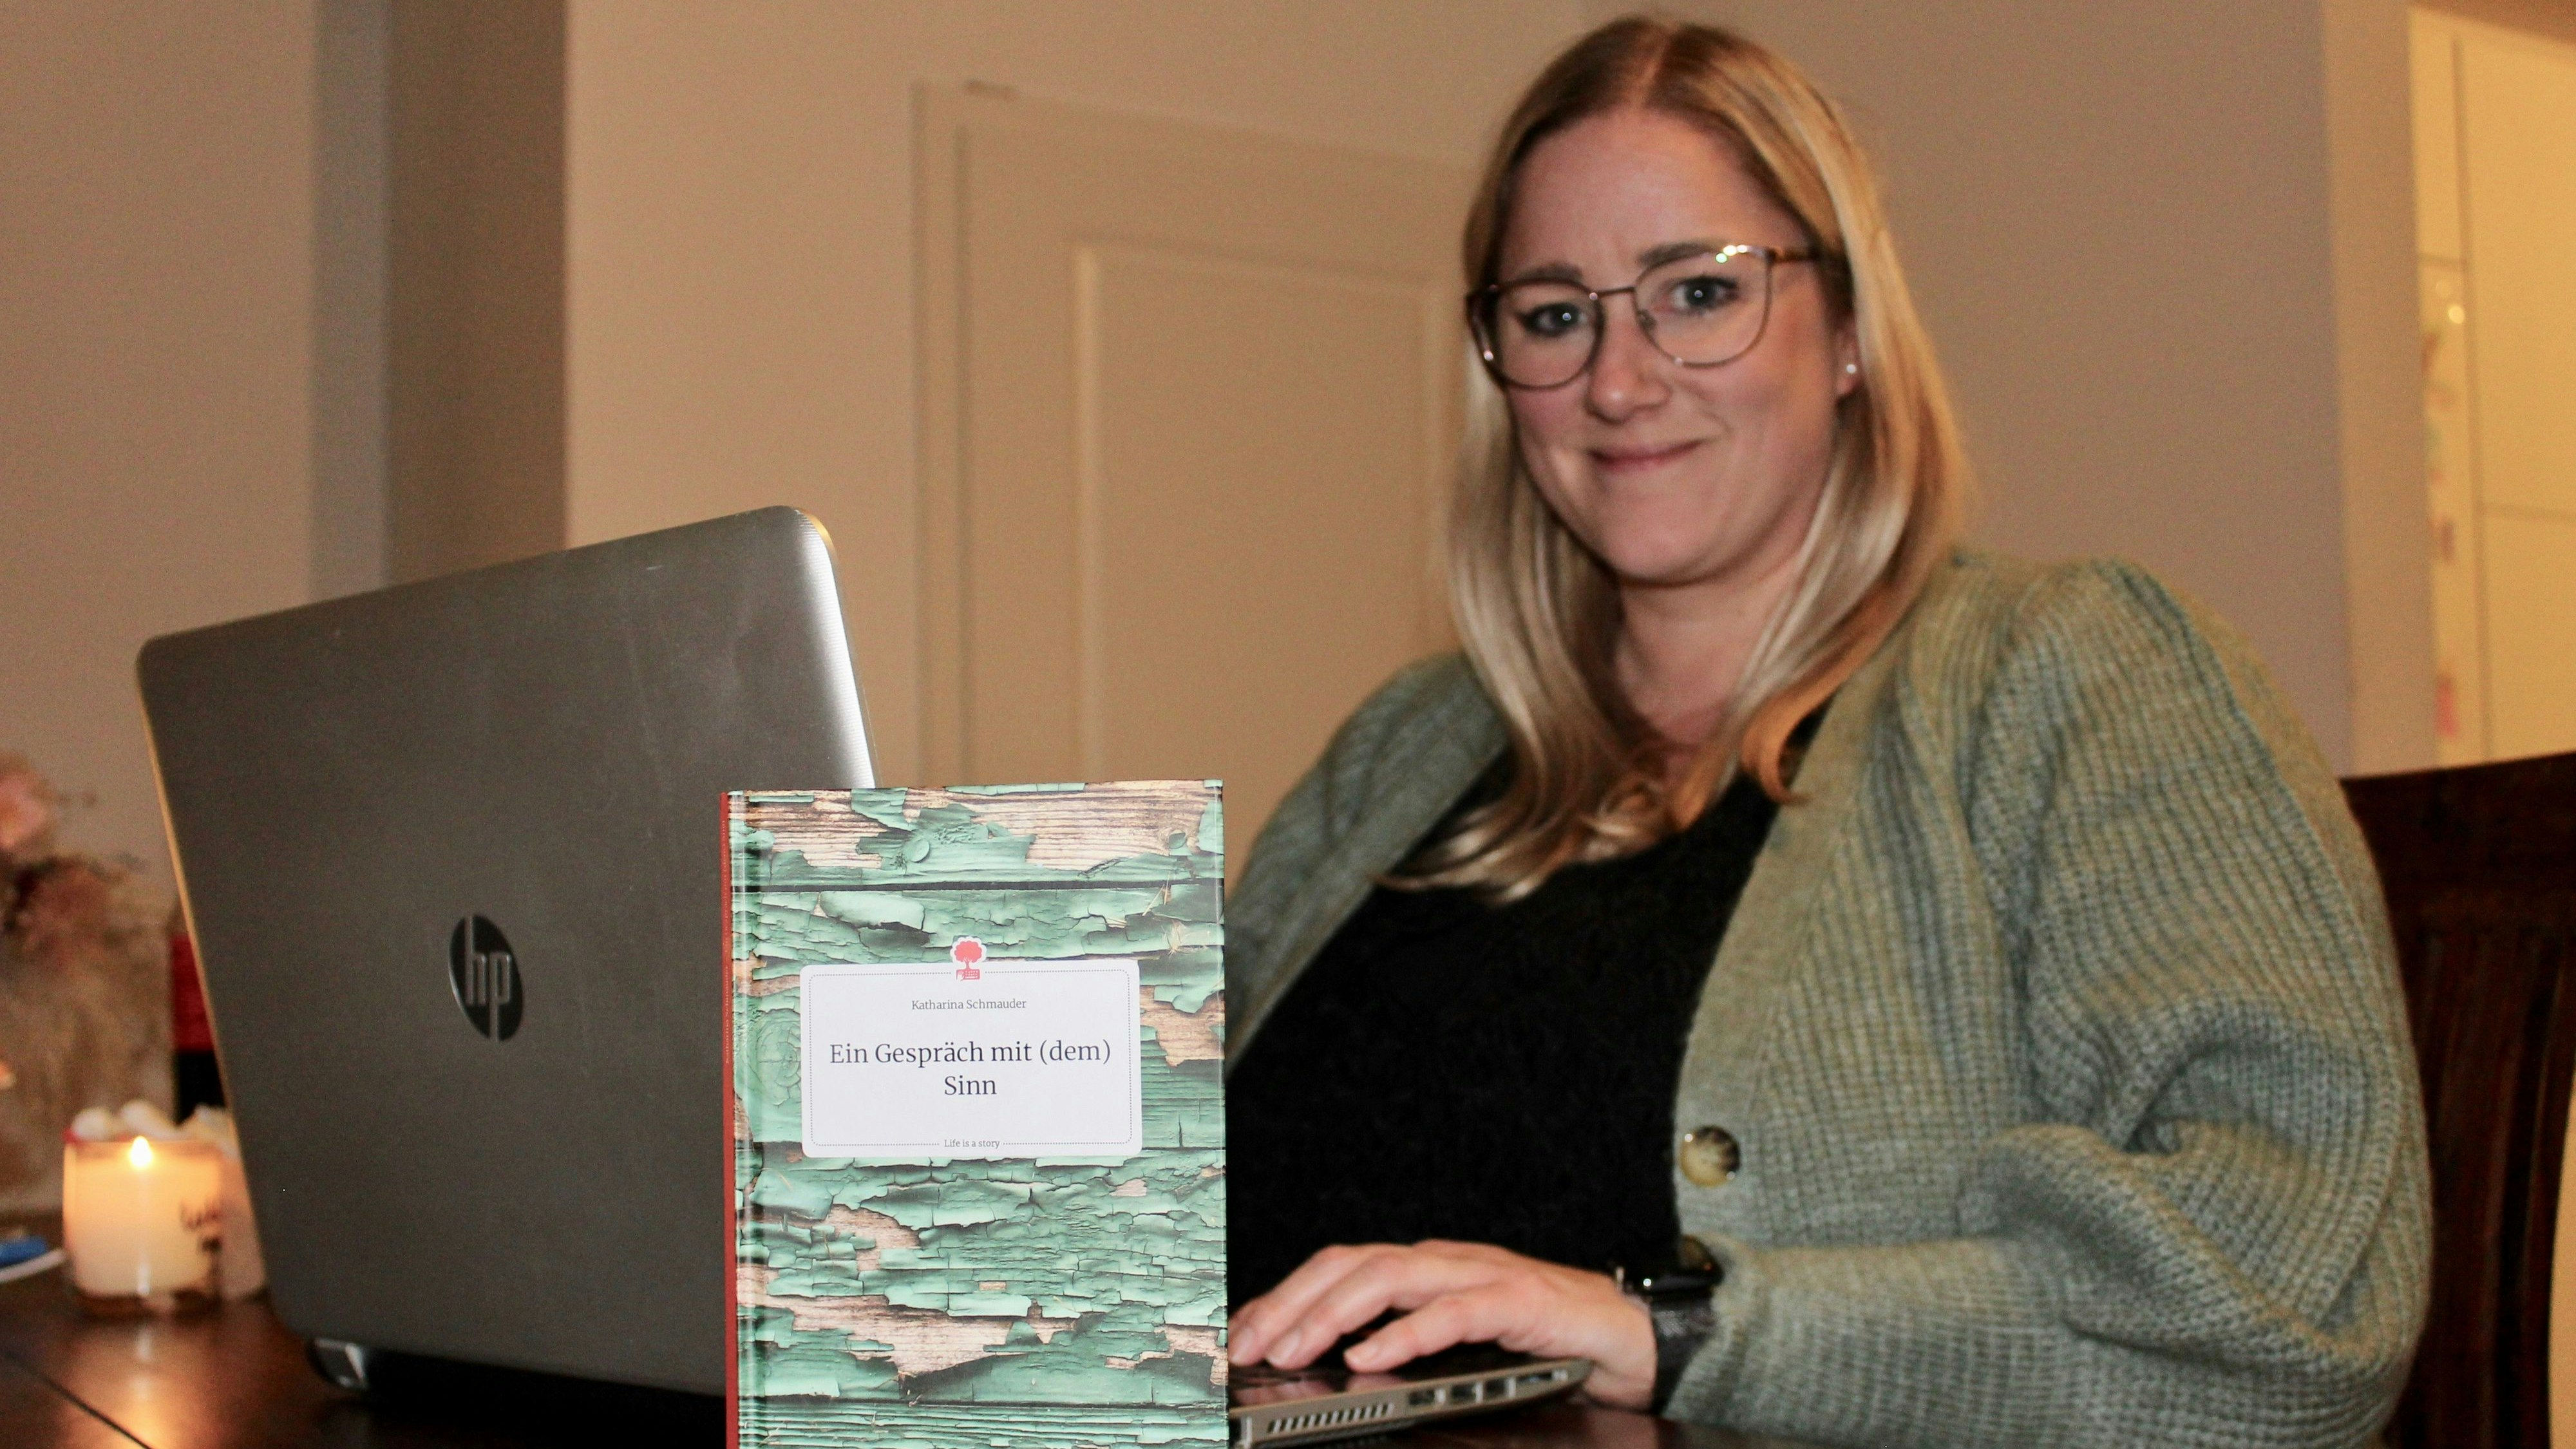 Stolz auf ihr Erstlingswerk: Katharina Schmauder hat sich mit dem Buch "Ein Gespräch mit (dem) Sinn" einen Kindheitstraum erfüllt. Foto: Hoff